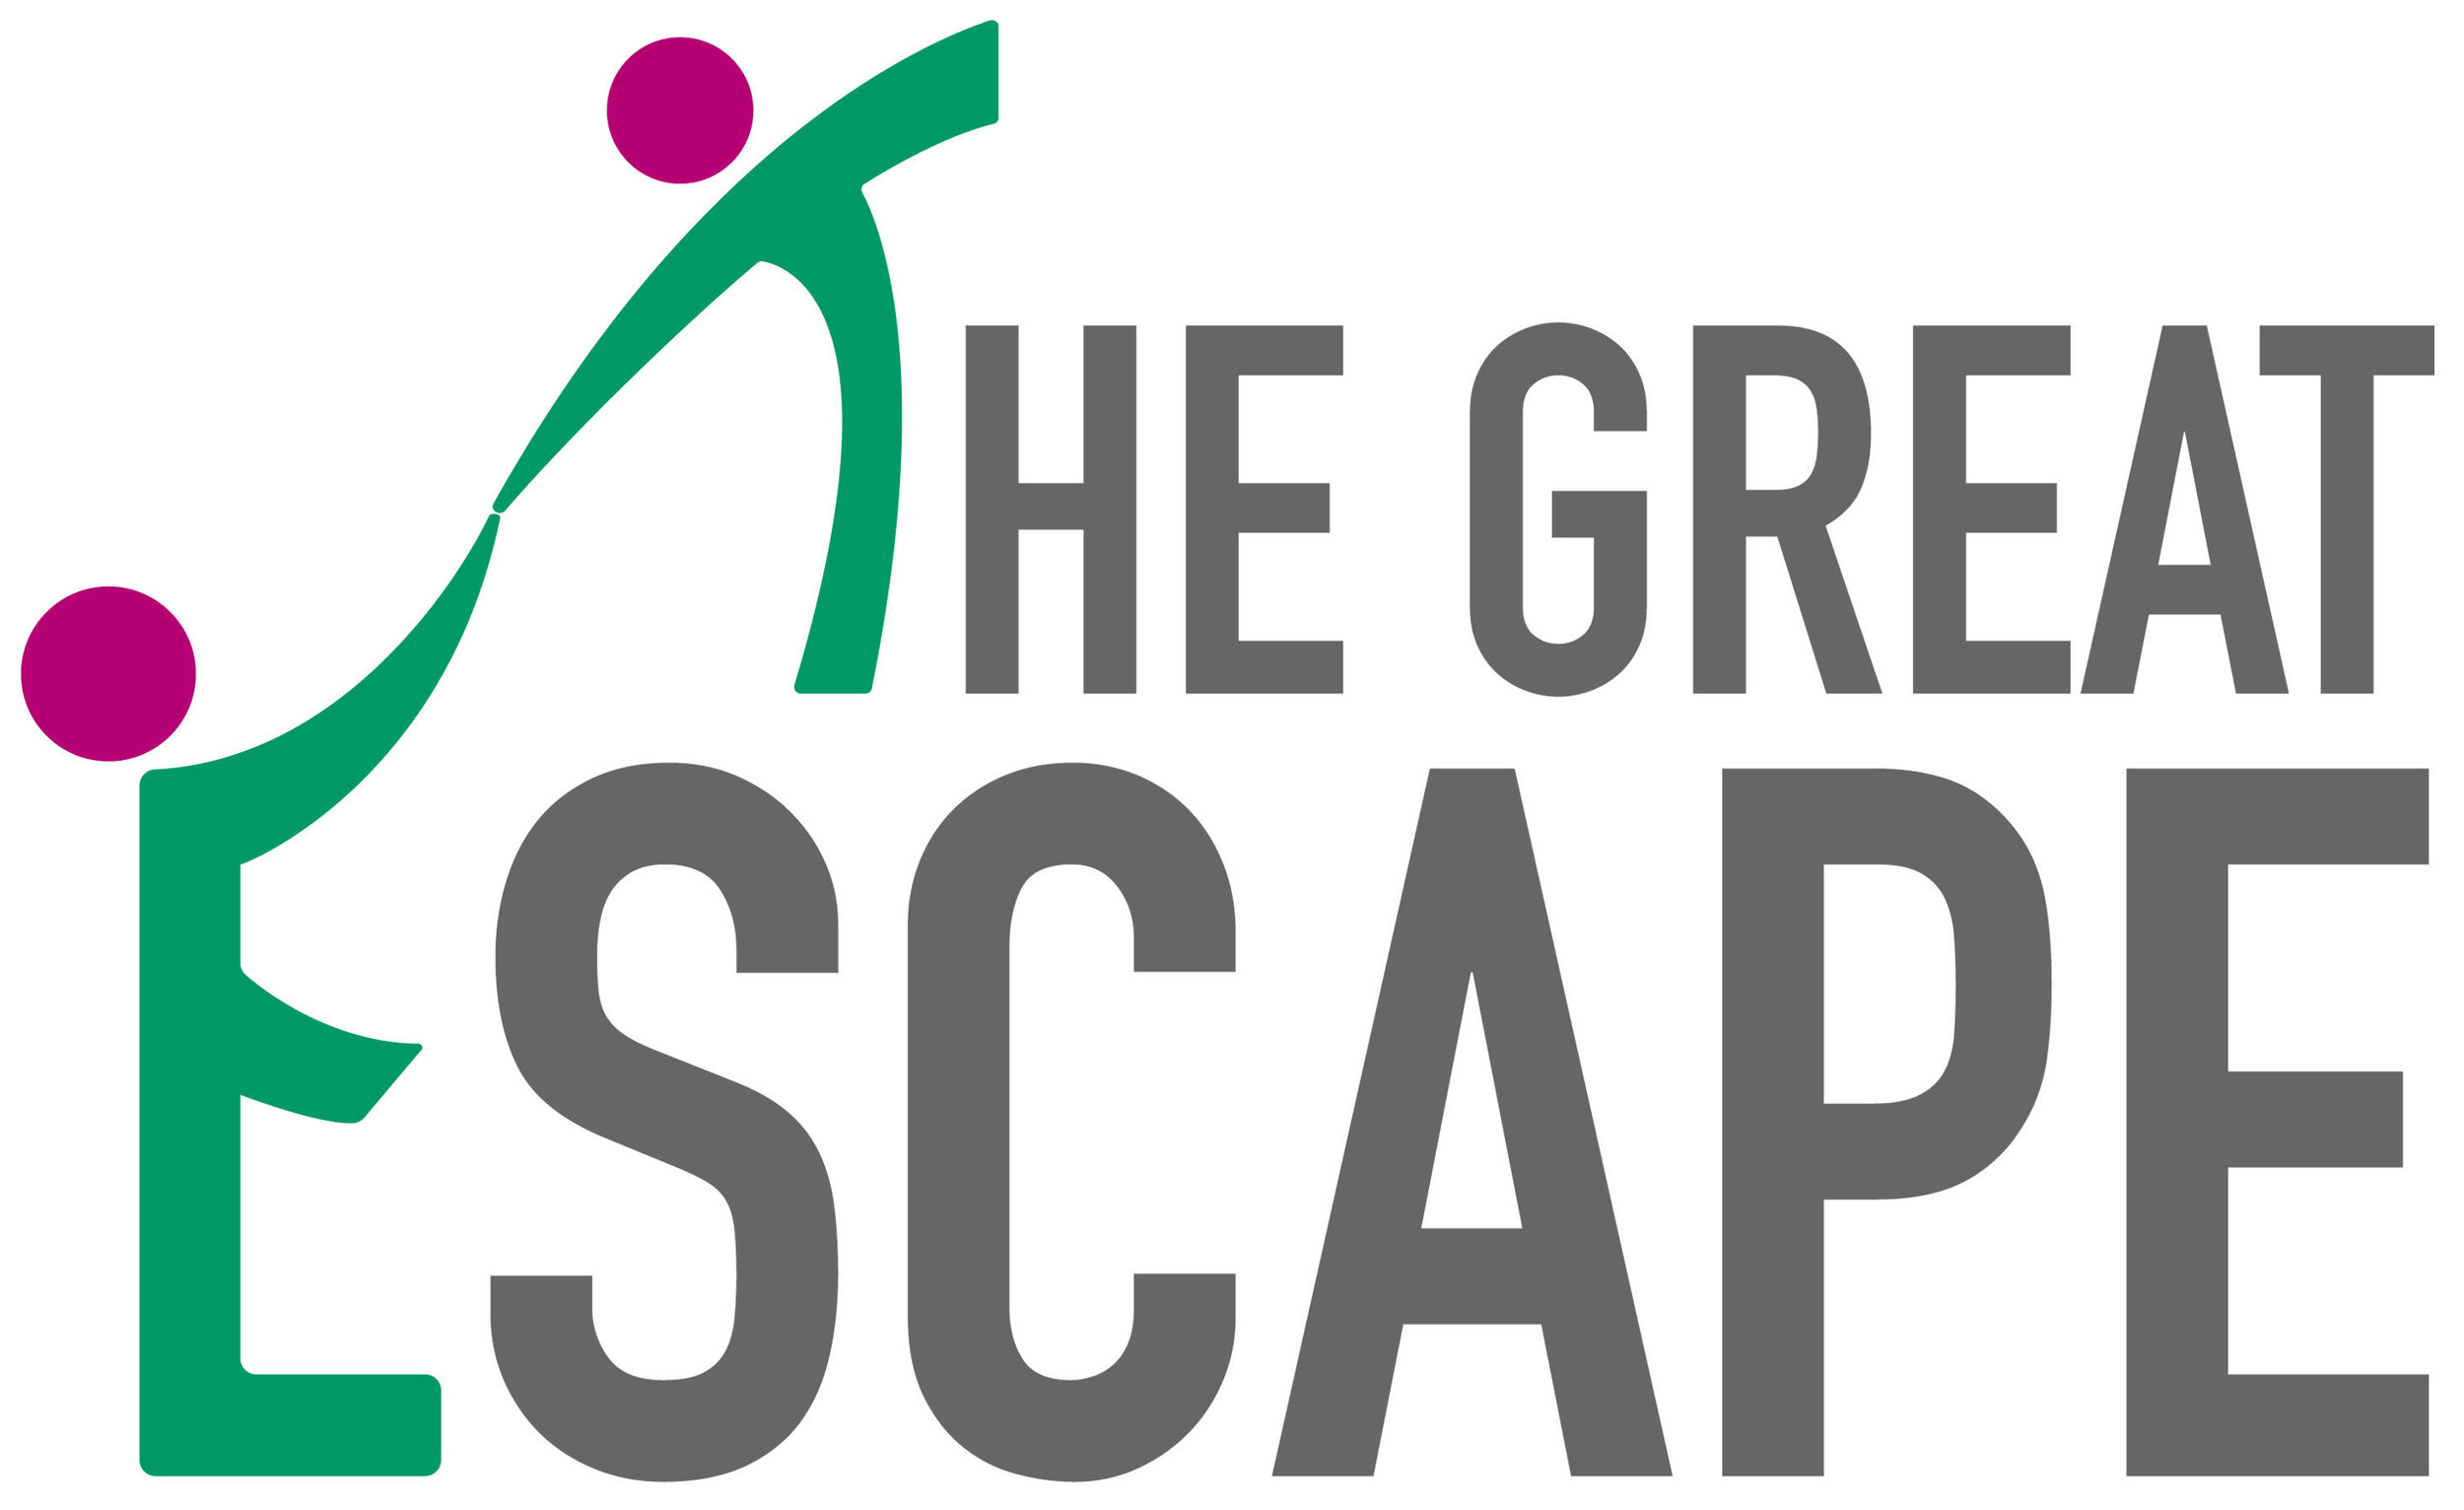 The Great Escape Company